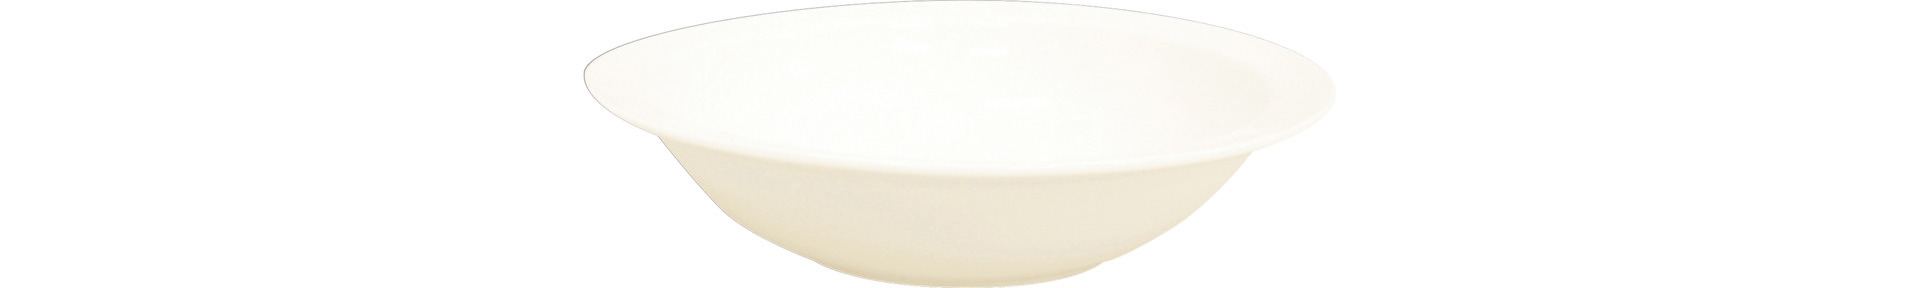 Schale rund 170 mm / 0,45 l crème